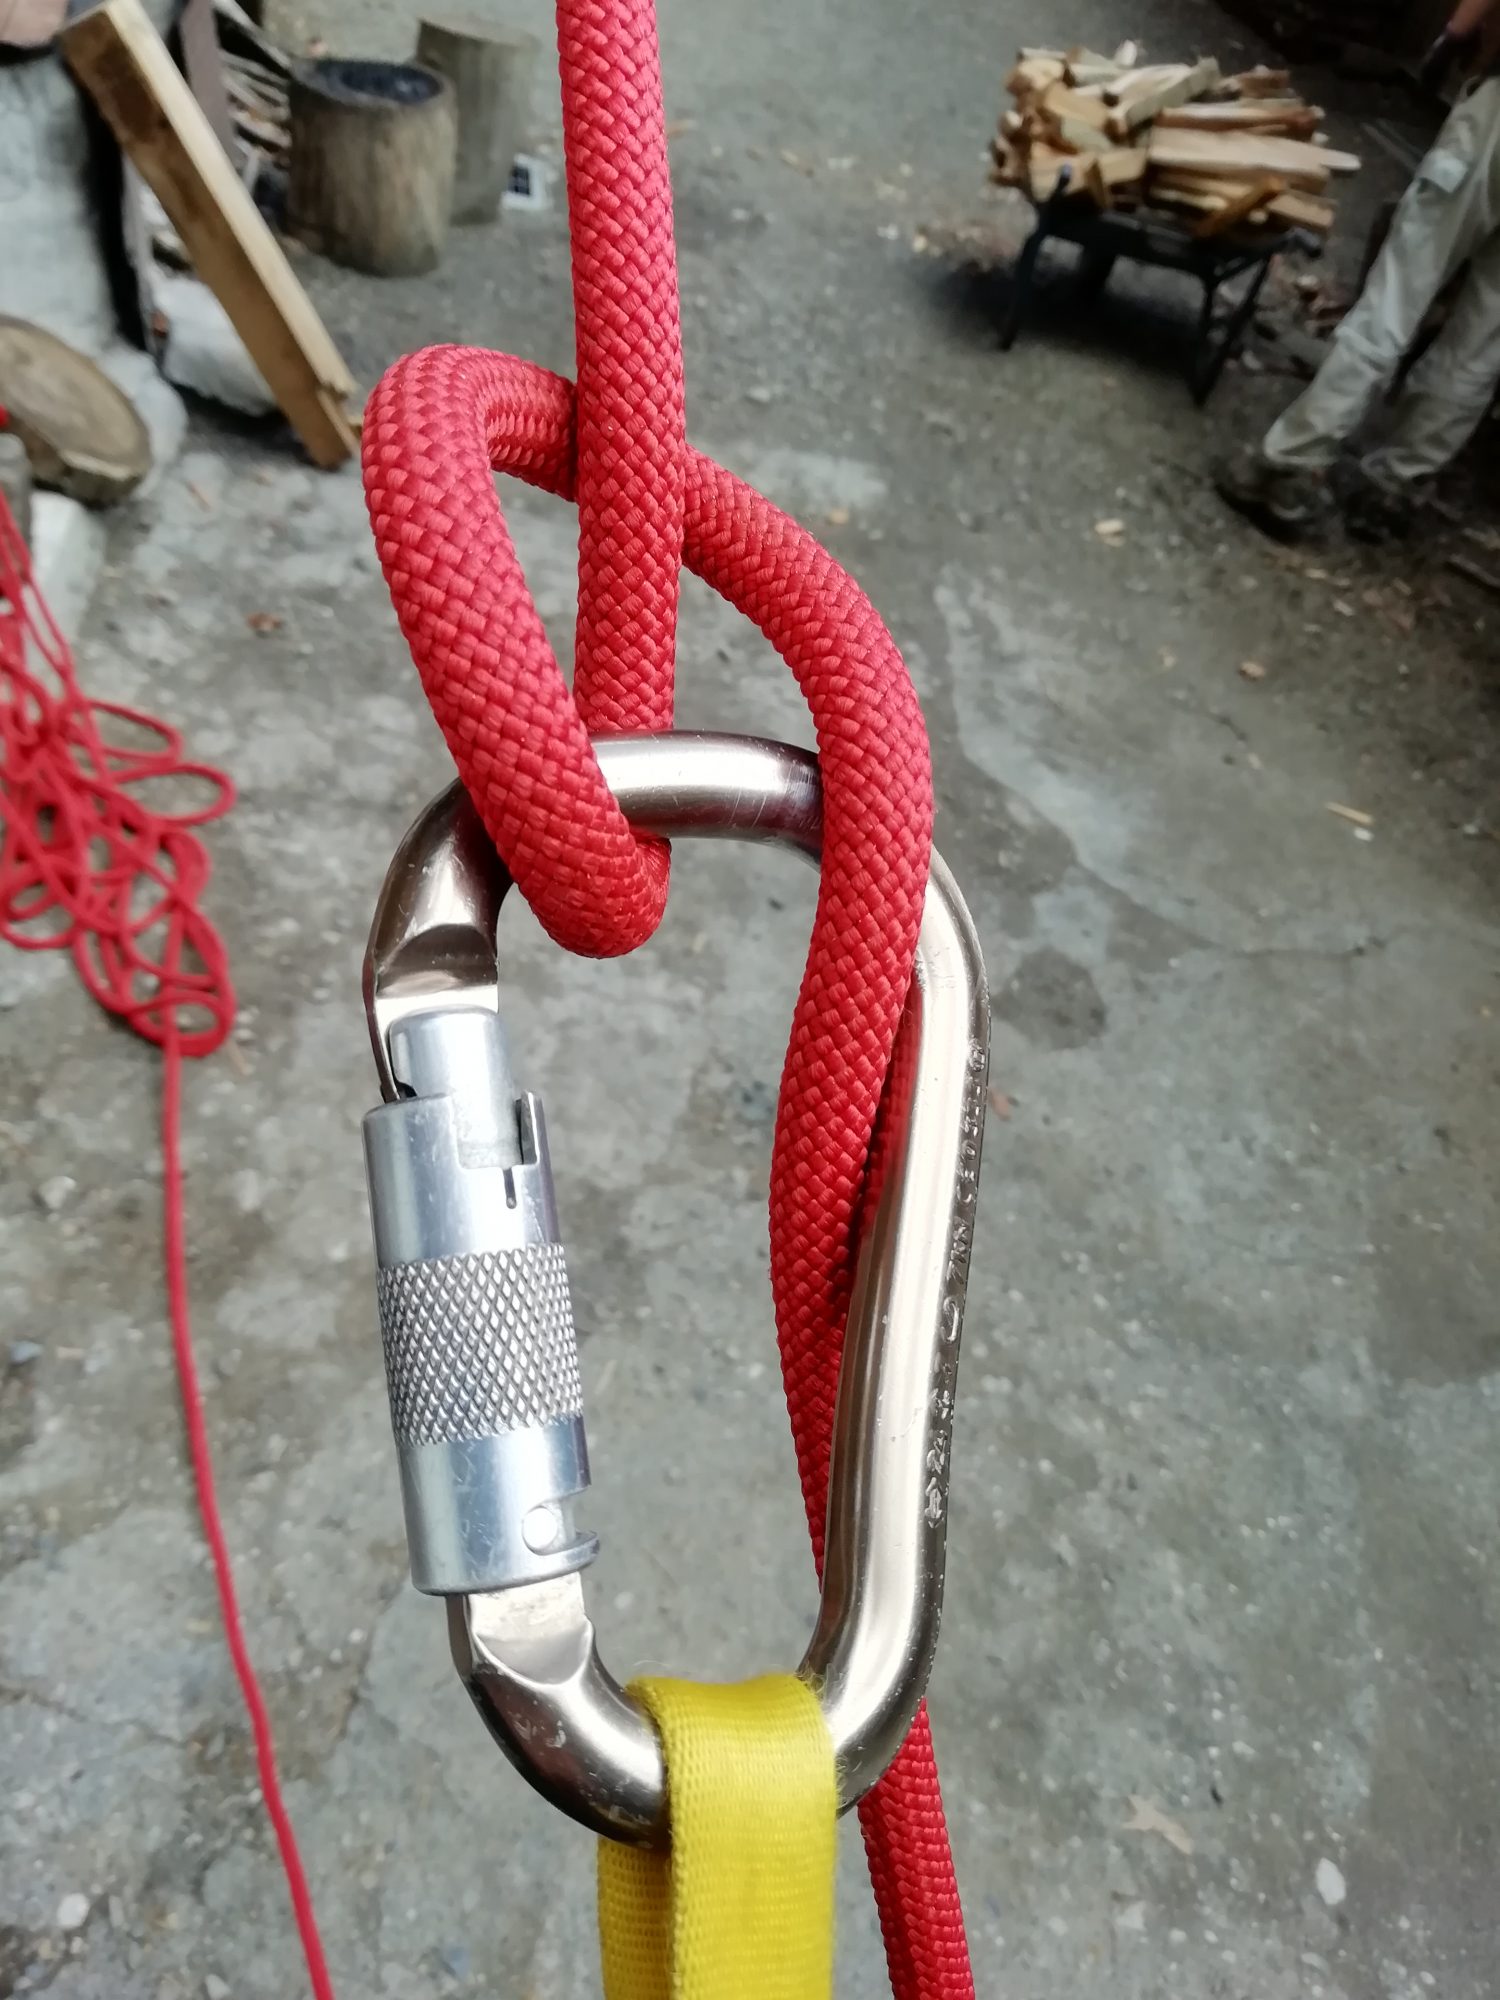 イタリアンヒッチ。下側のロープを引きながら、支点からカラビナまでのロープがピンと張るまで余長を取ります。